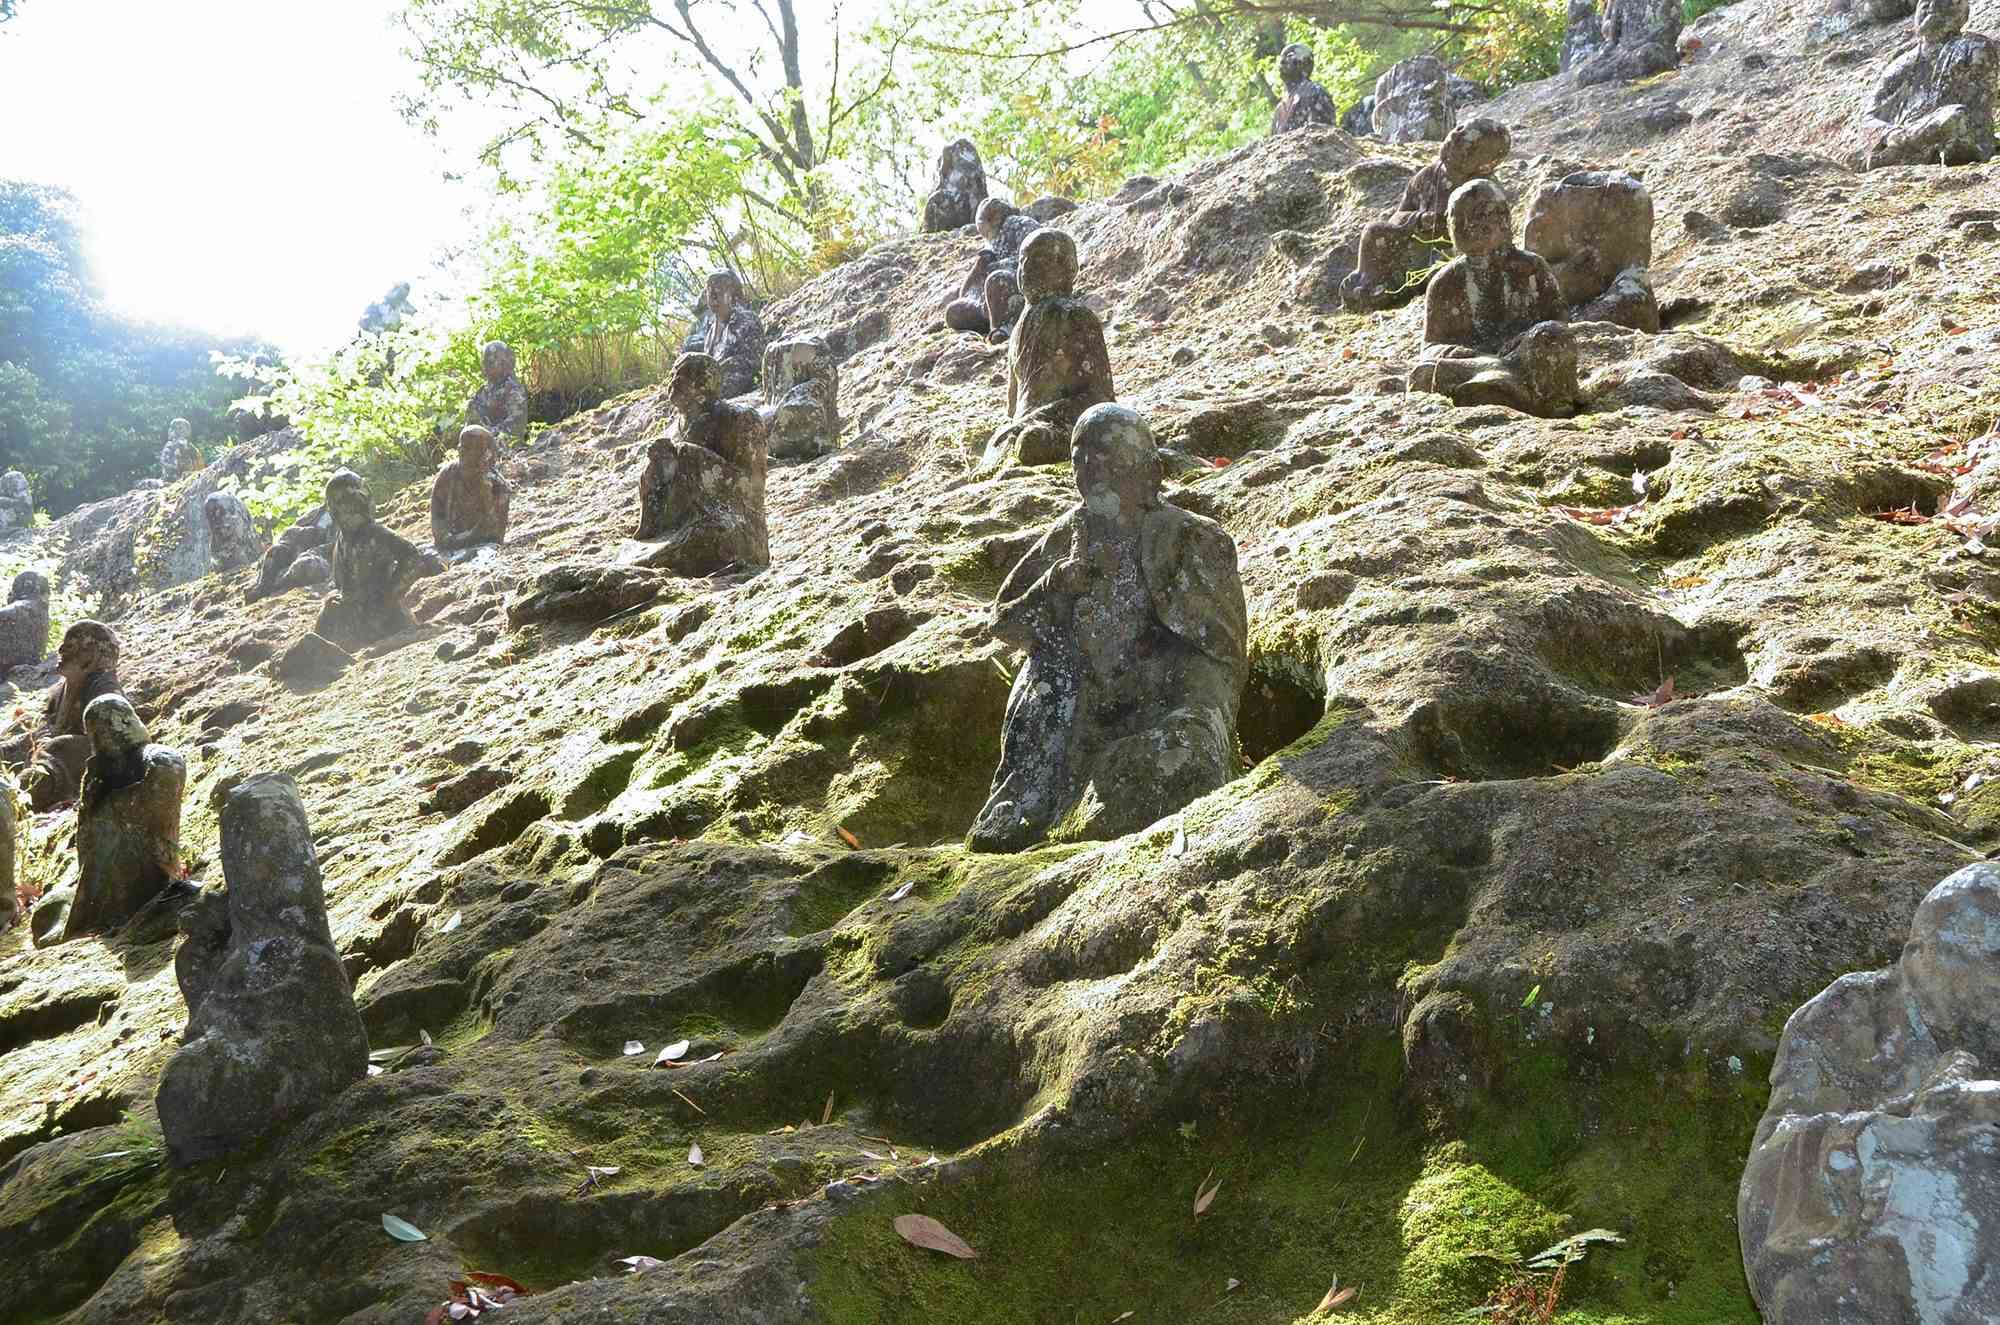 金峰山の火山噴出物「凝灰角礫岩」に安置された五百羅漢。「月のクレーターのようにくぼんでこけむした岩場と同化した石仏が美しい」と鵜殿暁子さん＝熊本市西区